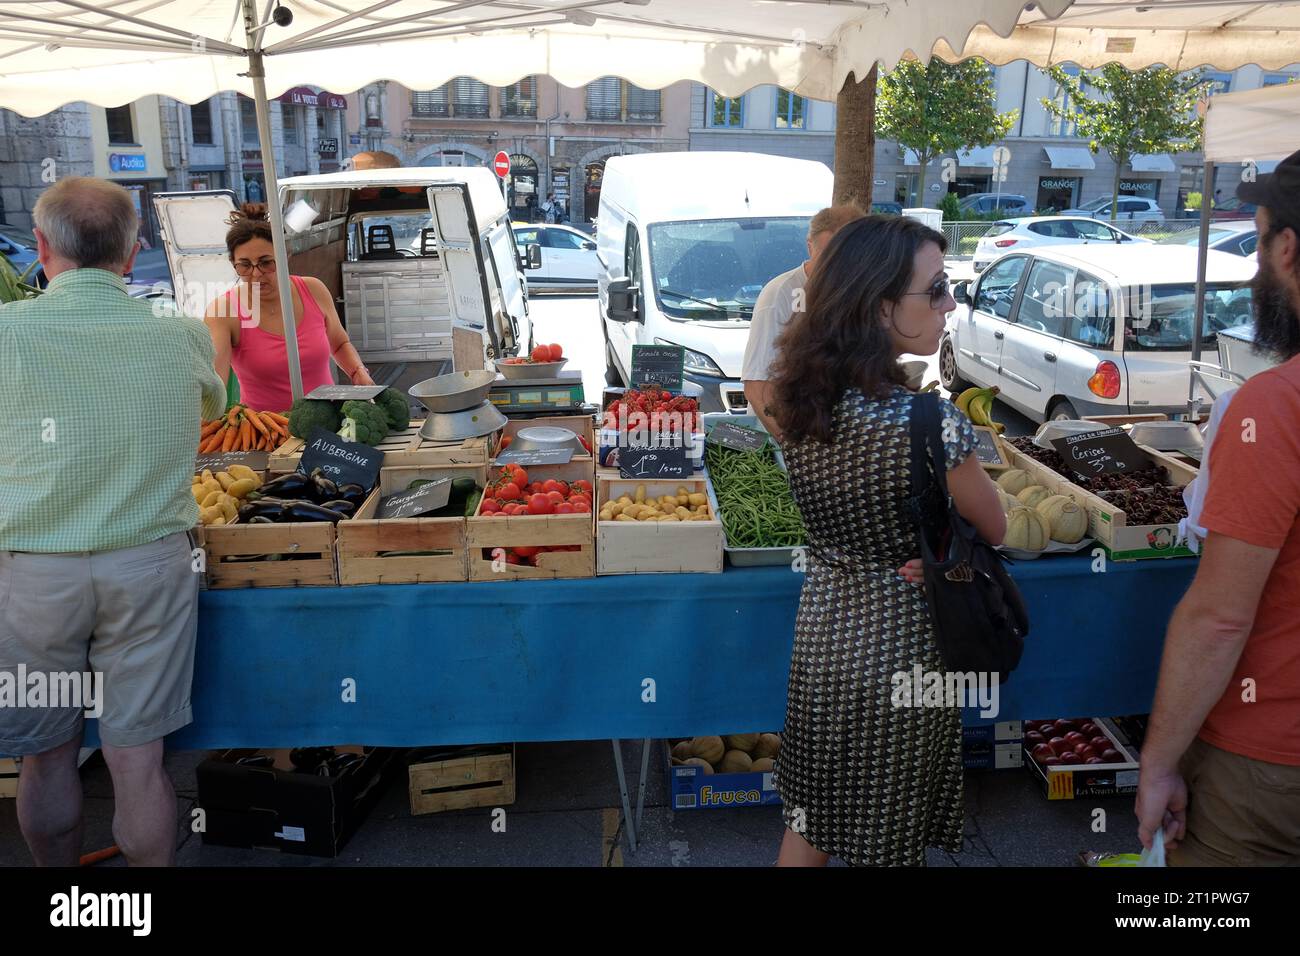 Venditori e acquirenti presso una bancarella di frutta e verdura presso un mercato all'aperto vicino al fiume. Giornata di mercato a Lione, Francia Foto Stock